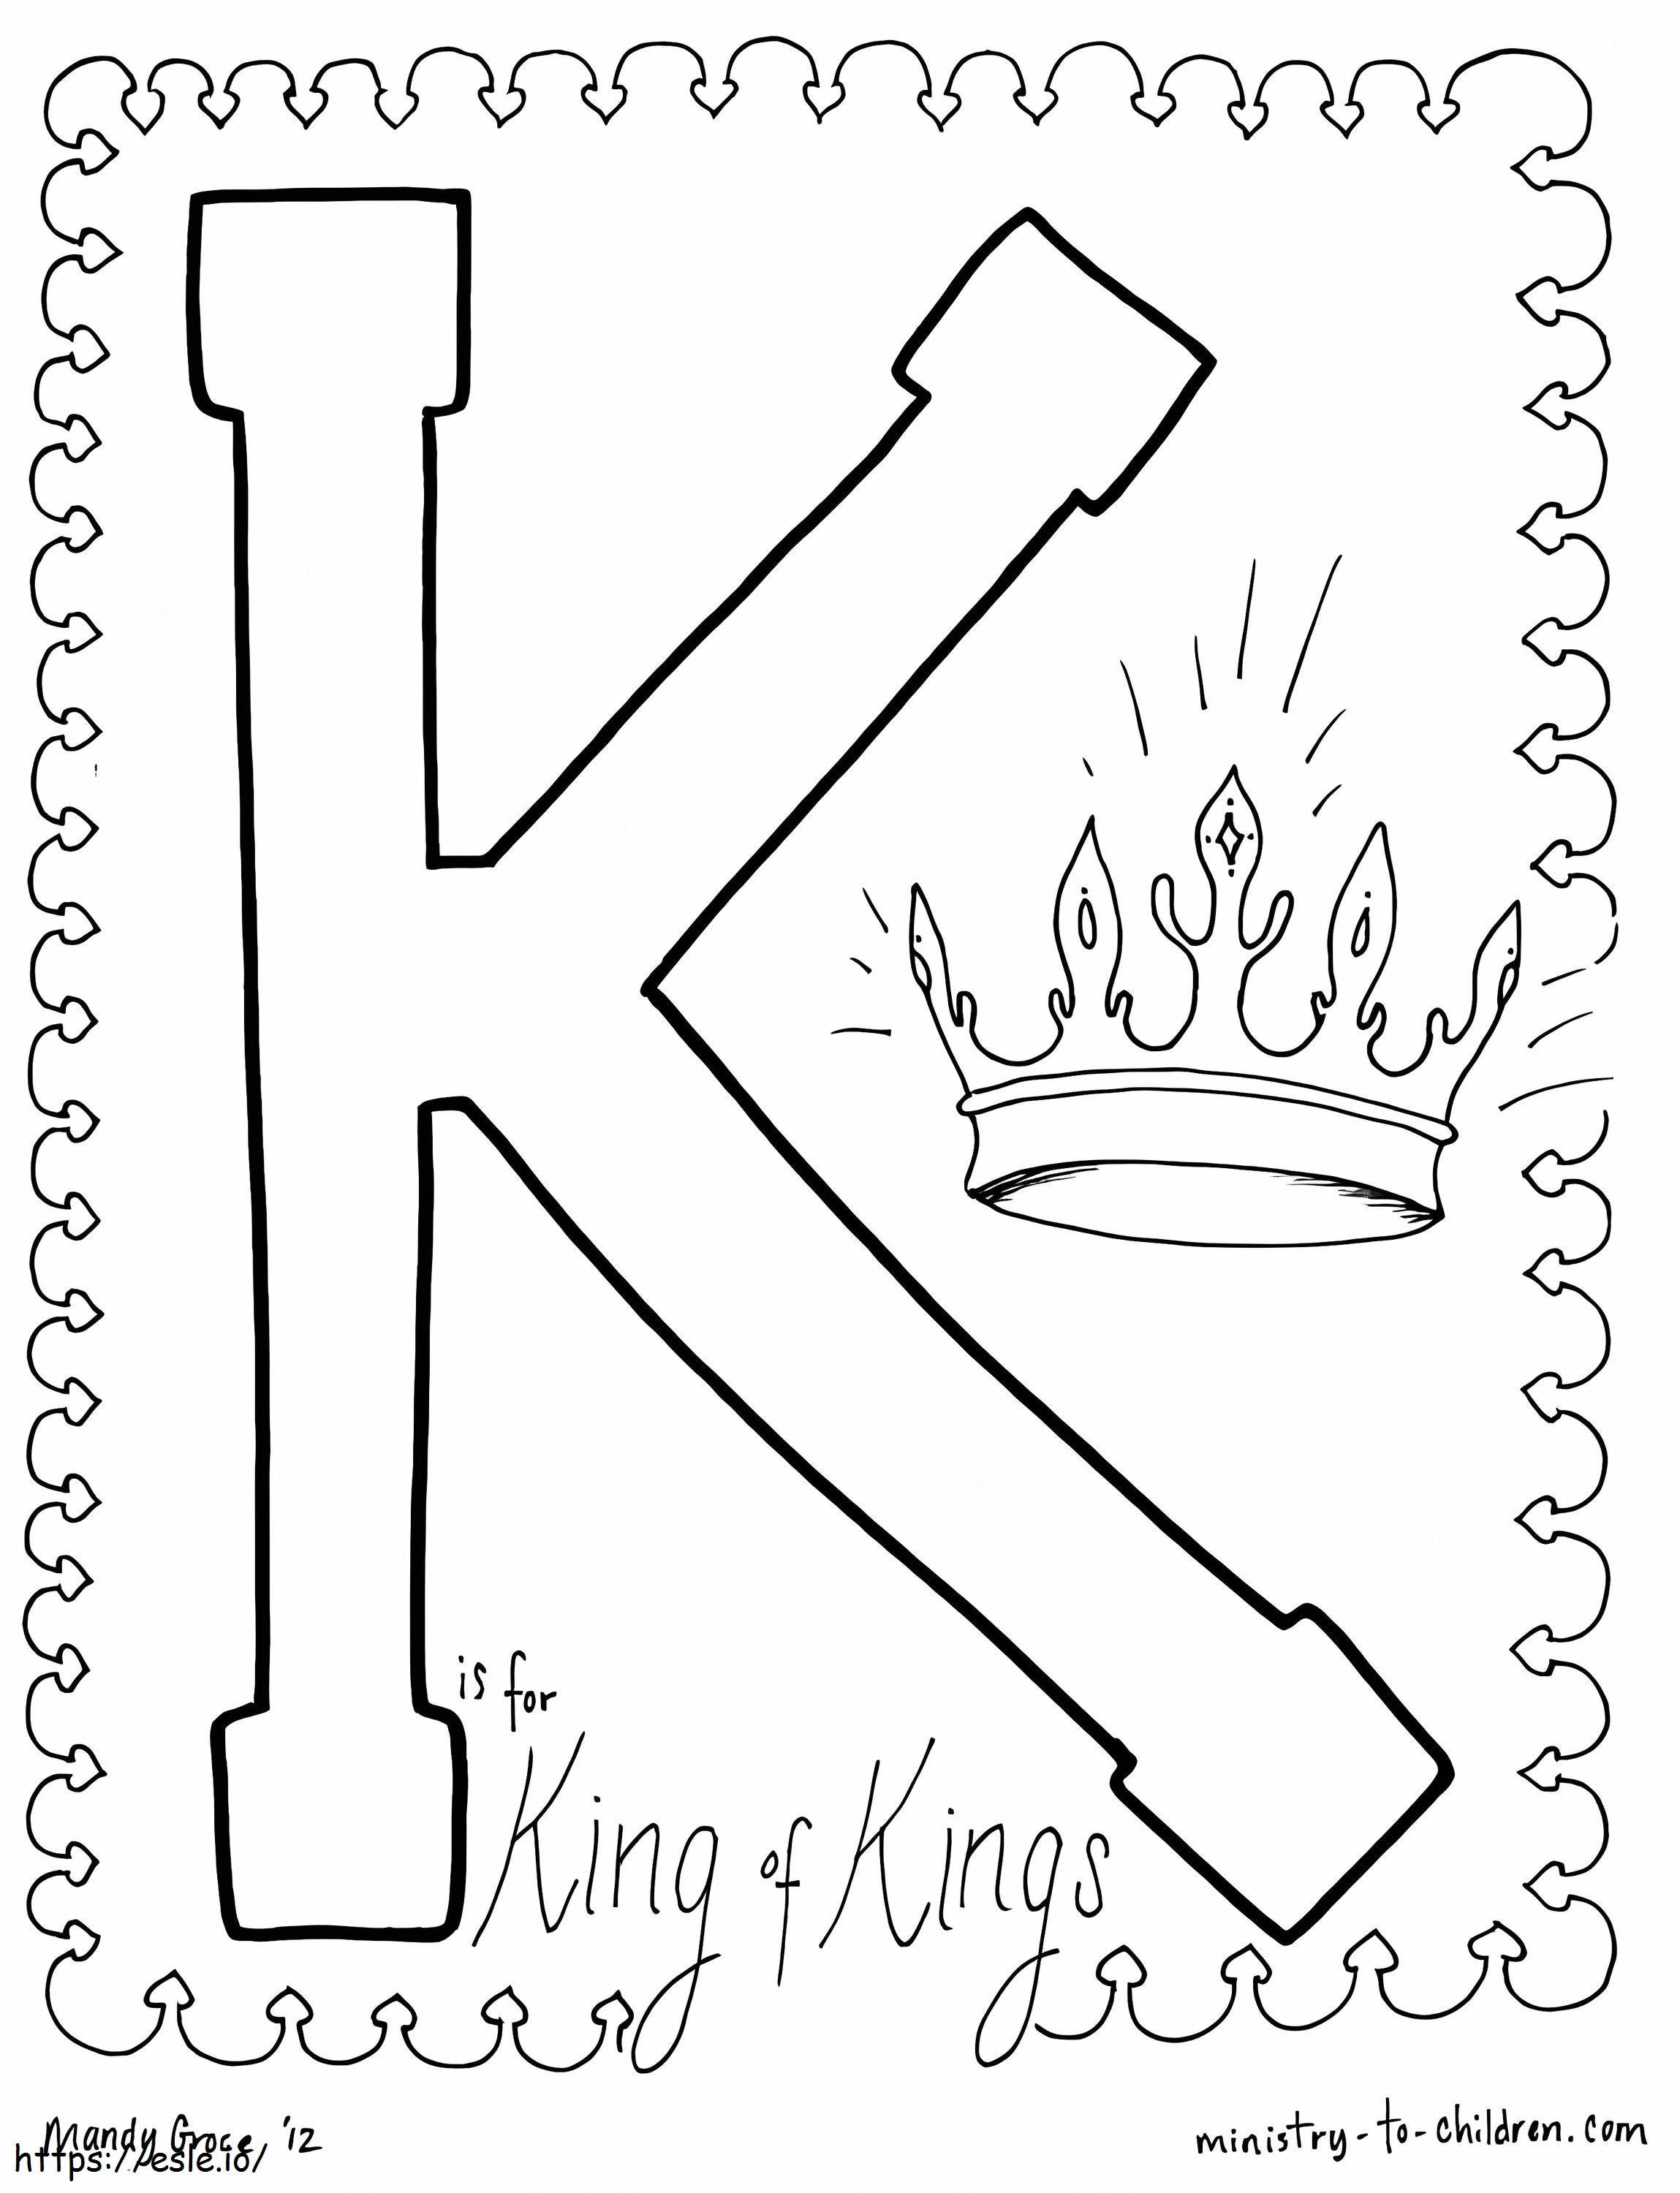 K a King Of Kings számára kifestő